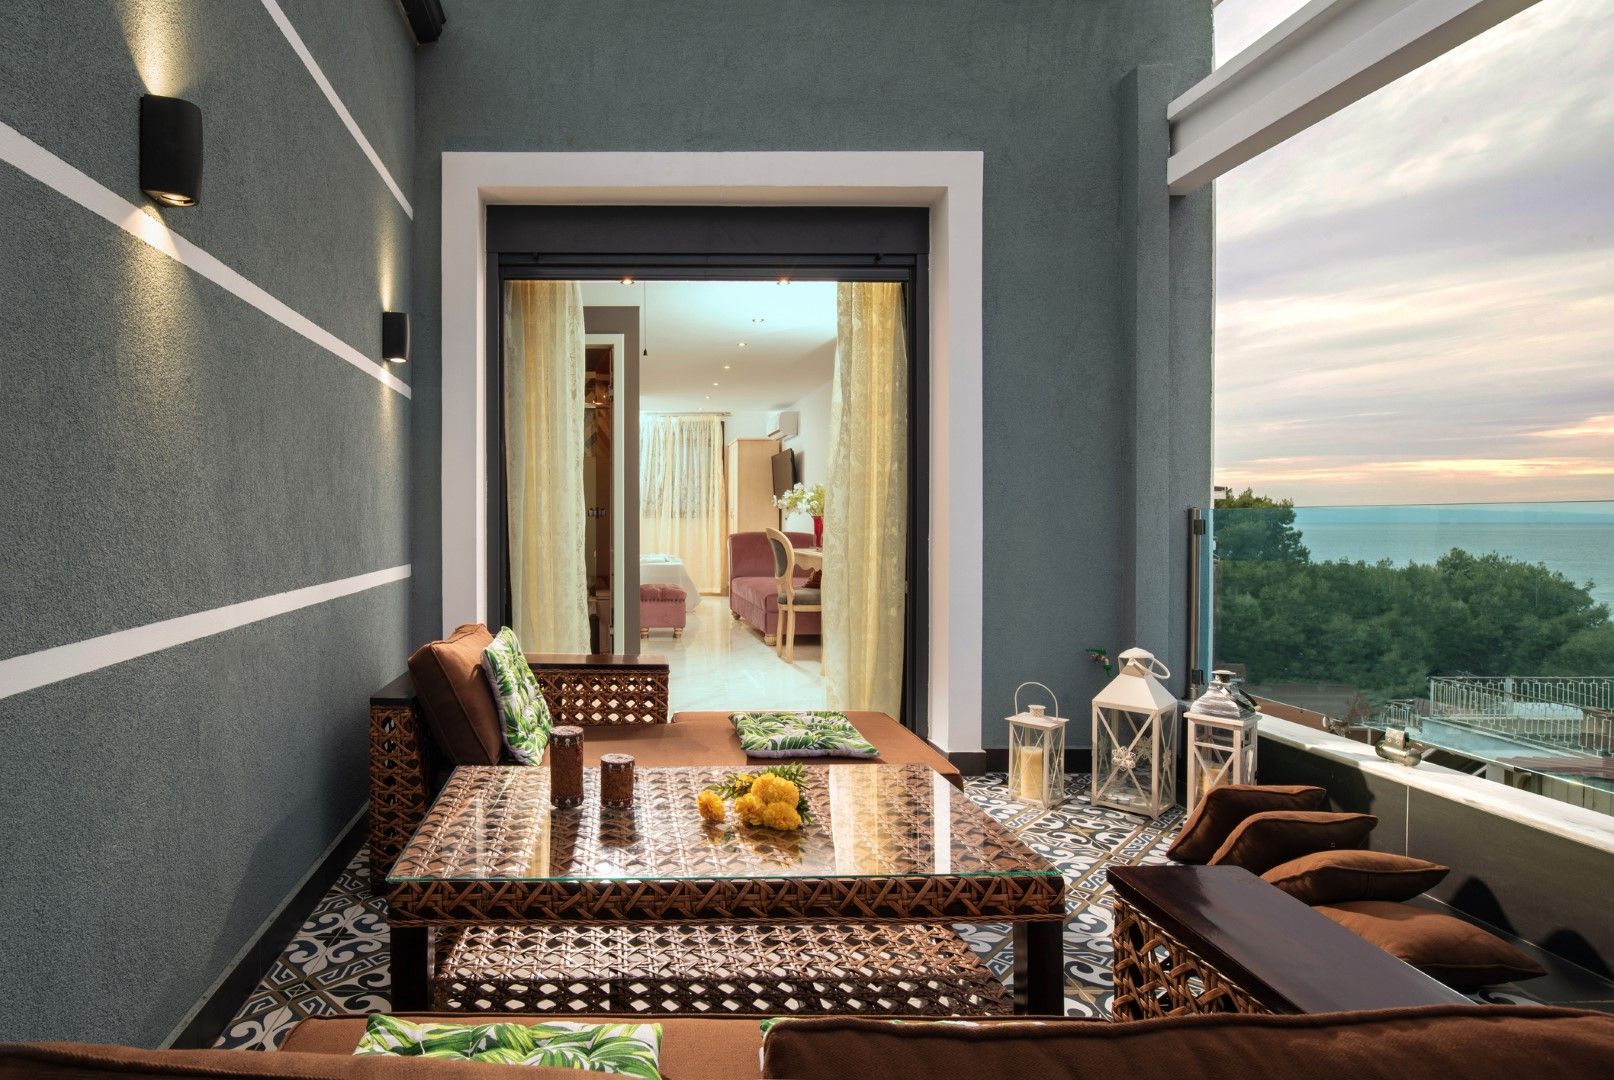 В Маракеш можете да спите в хотел или в традиционен риад (къща с вътрешен двор, обикновено обзаведена в традиционен стил), но има и много луксозни хотели с невероятни панорамни тераси към града.